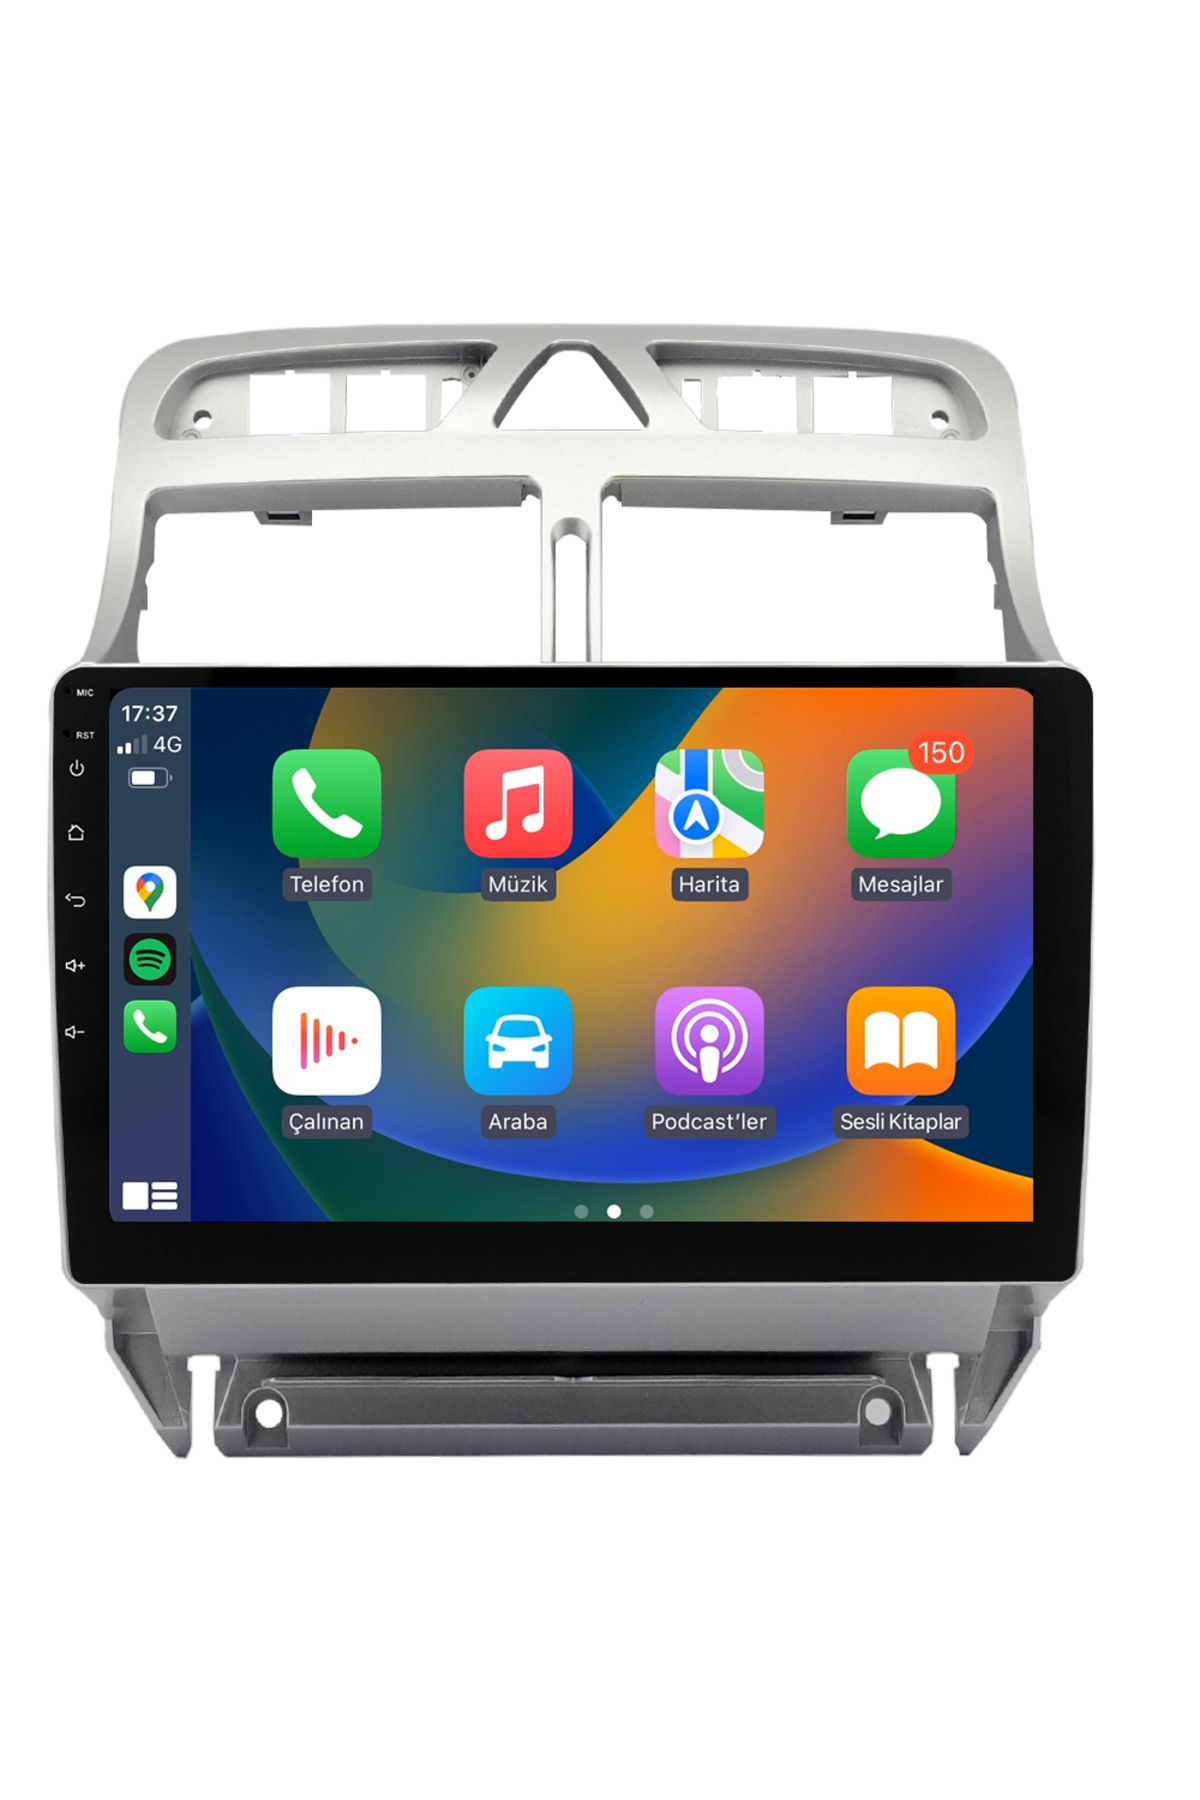 EXVOL Peugeot 307 Multimedya Carplay 9 Inc Hd Ips Ekran 2gb/32gb Android 12 Sürüm Park Kamerası Hediyeli